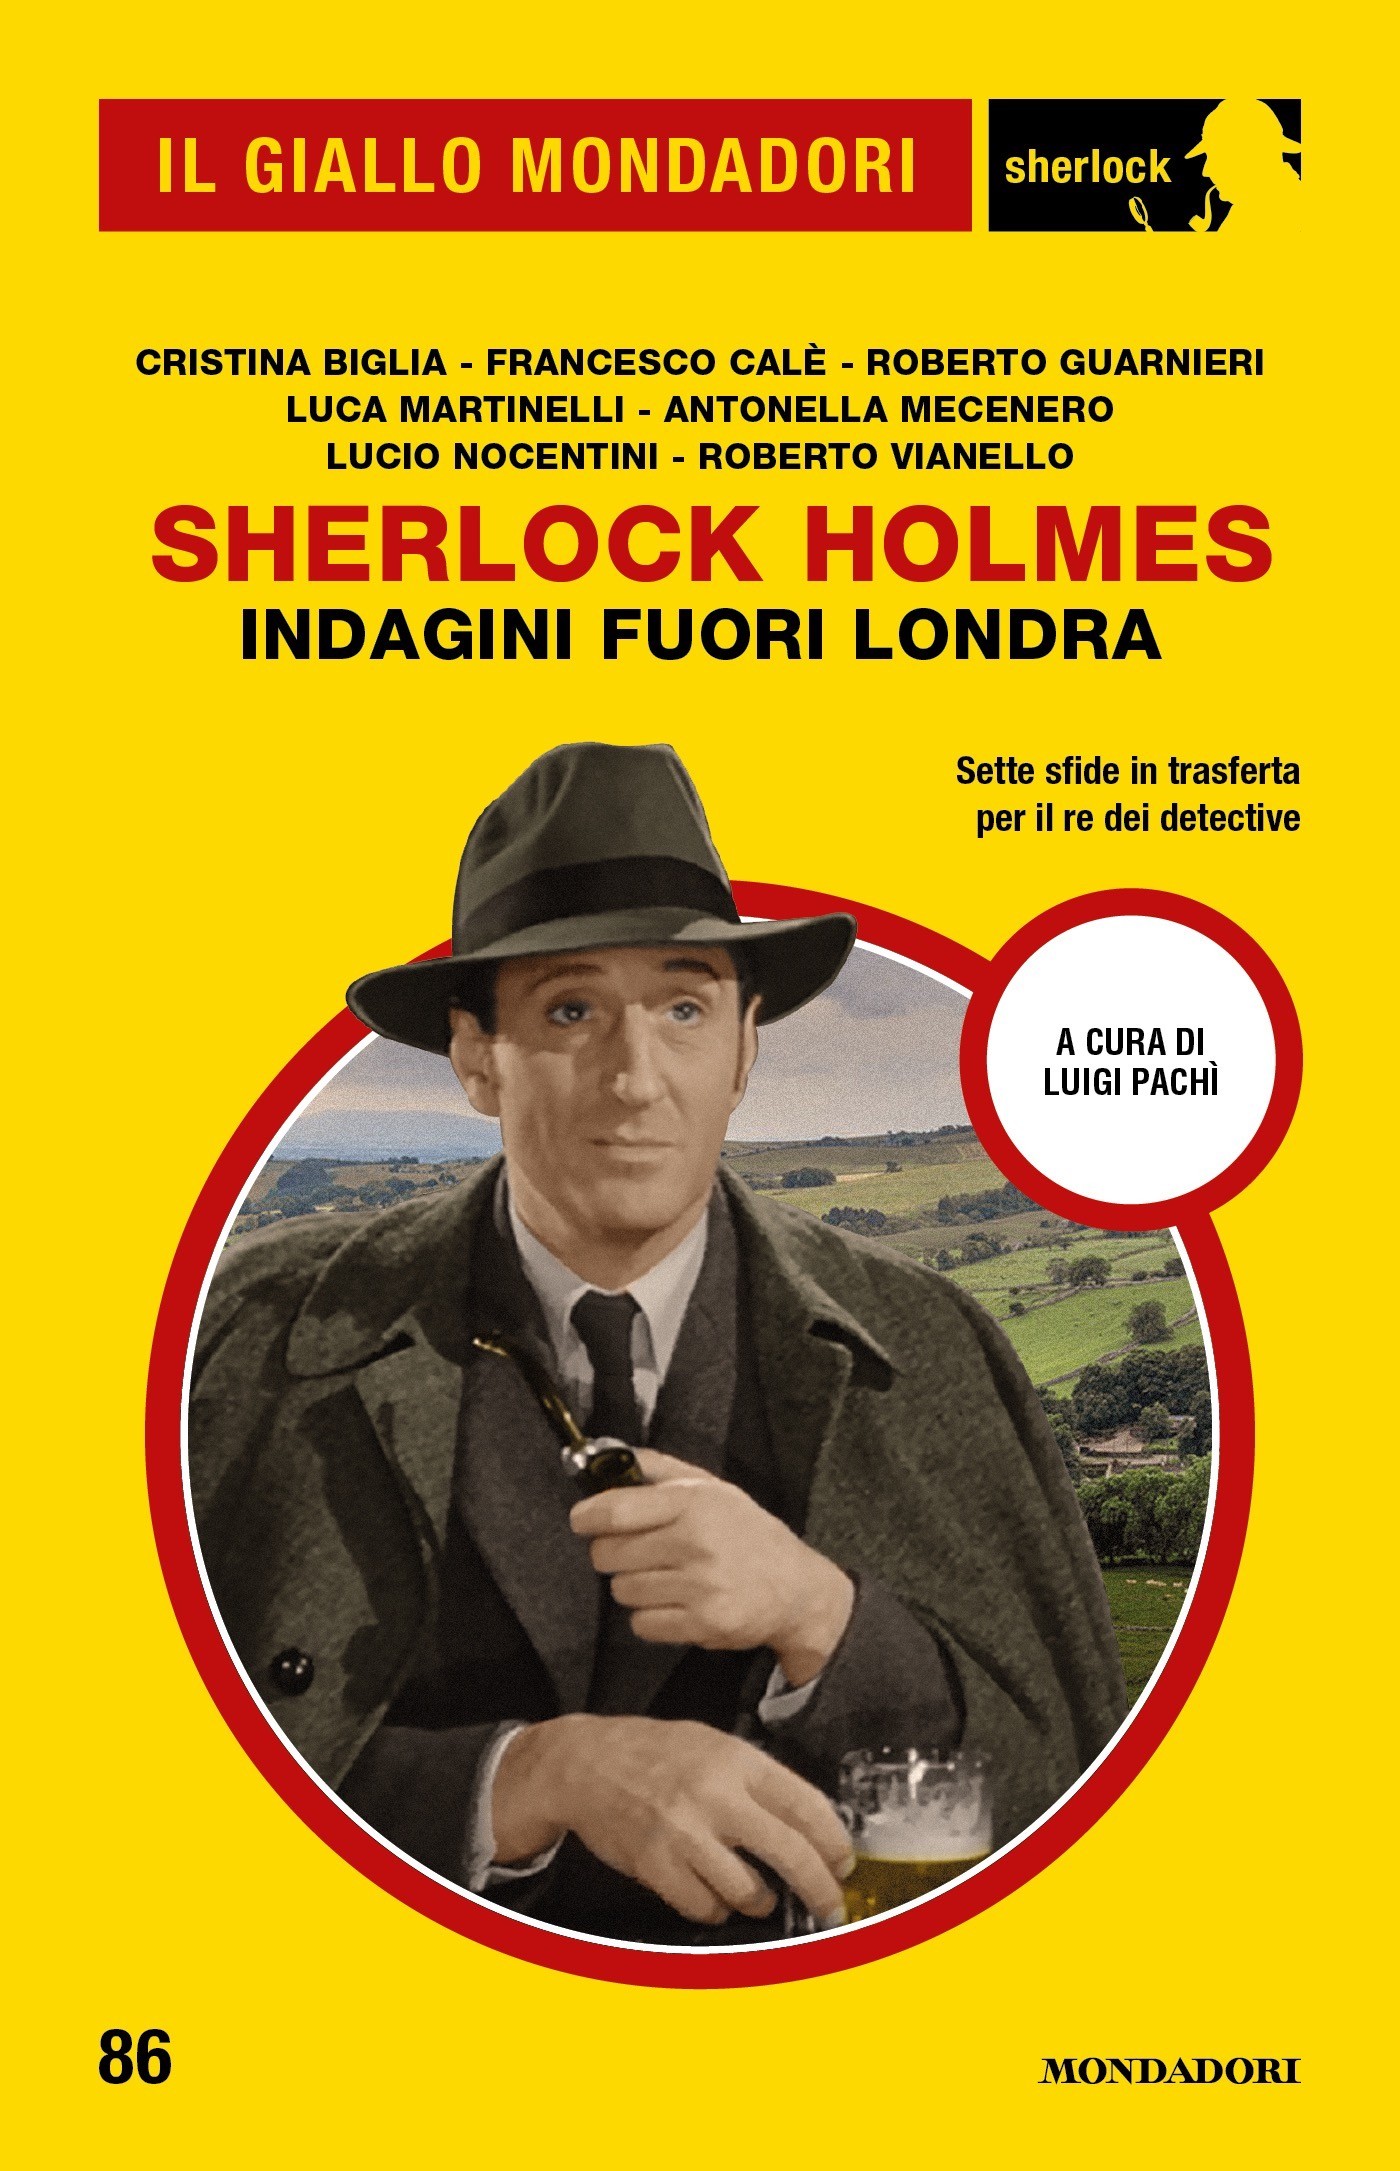 Sherlock Holmes. Indagini fuori Londra (Il Giallo Mondadori Sherlock) - Librerie.coop